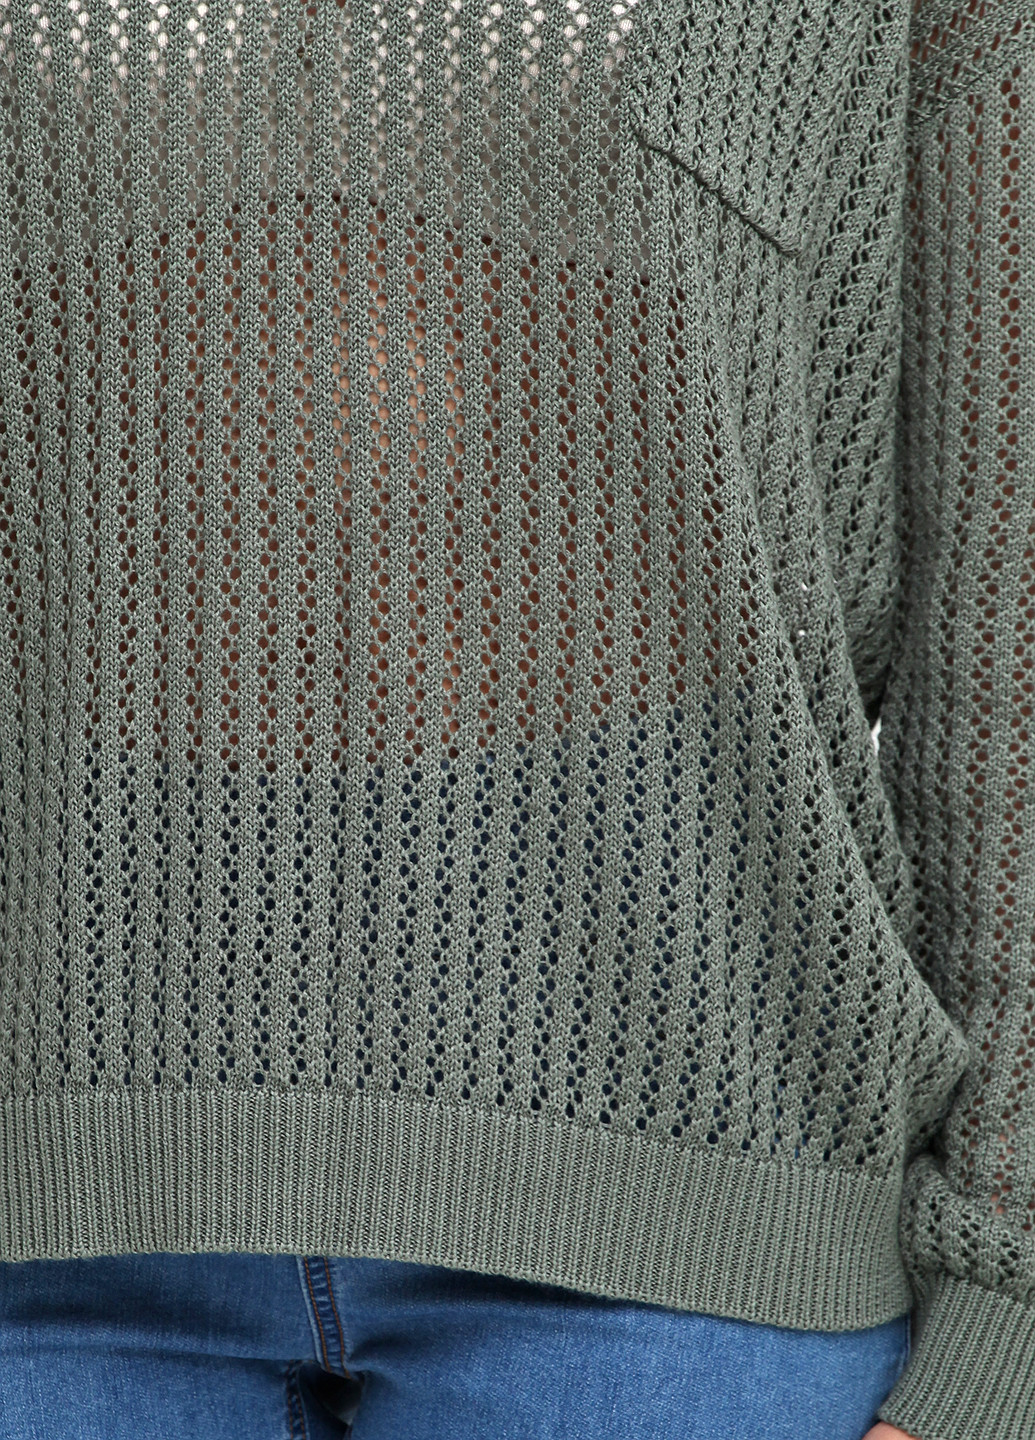 Оливковый (хаки) демисезонный пуловер пуловер Intown